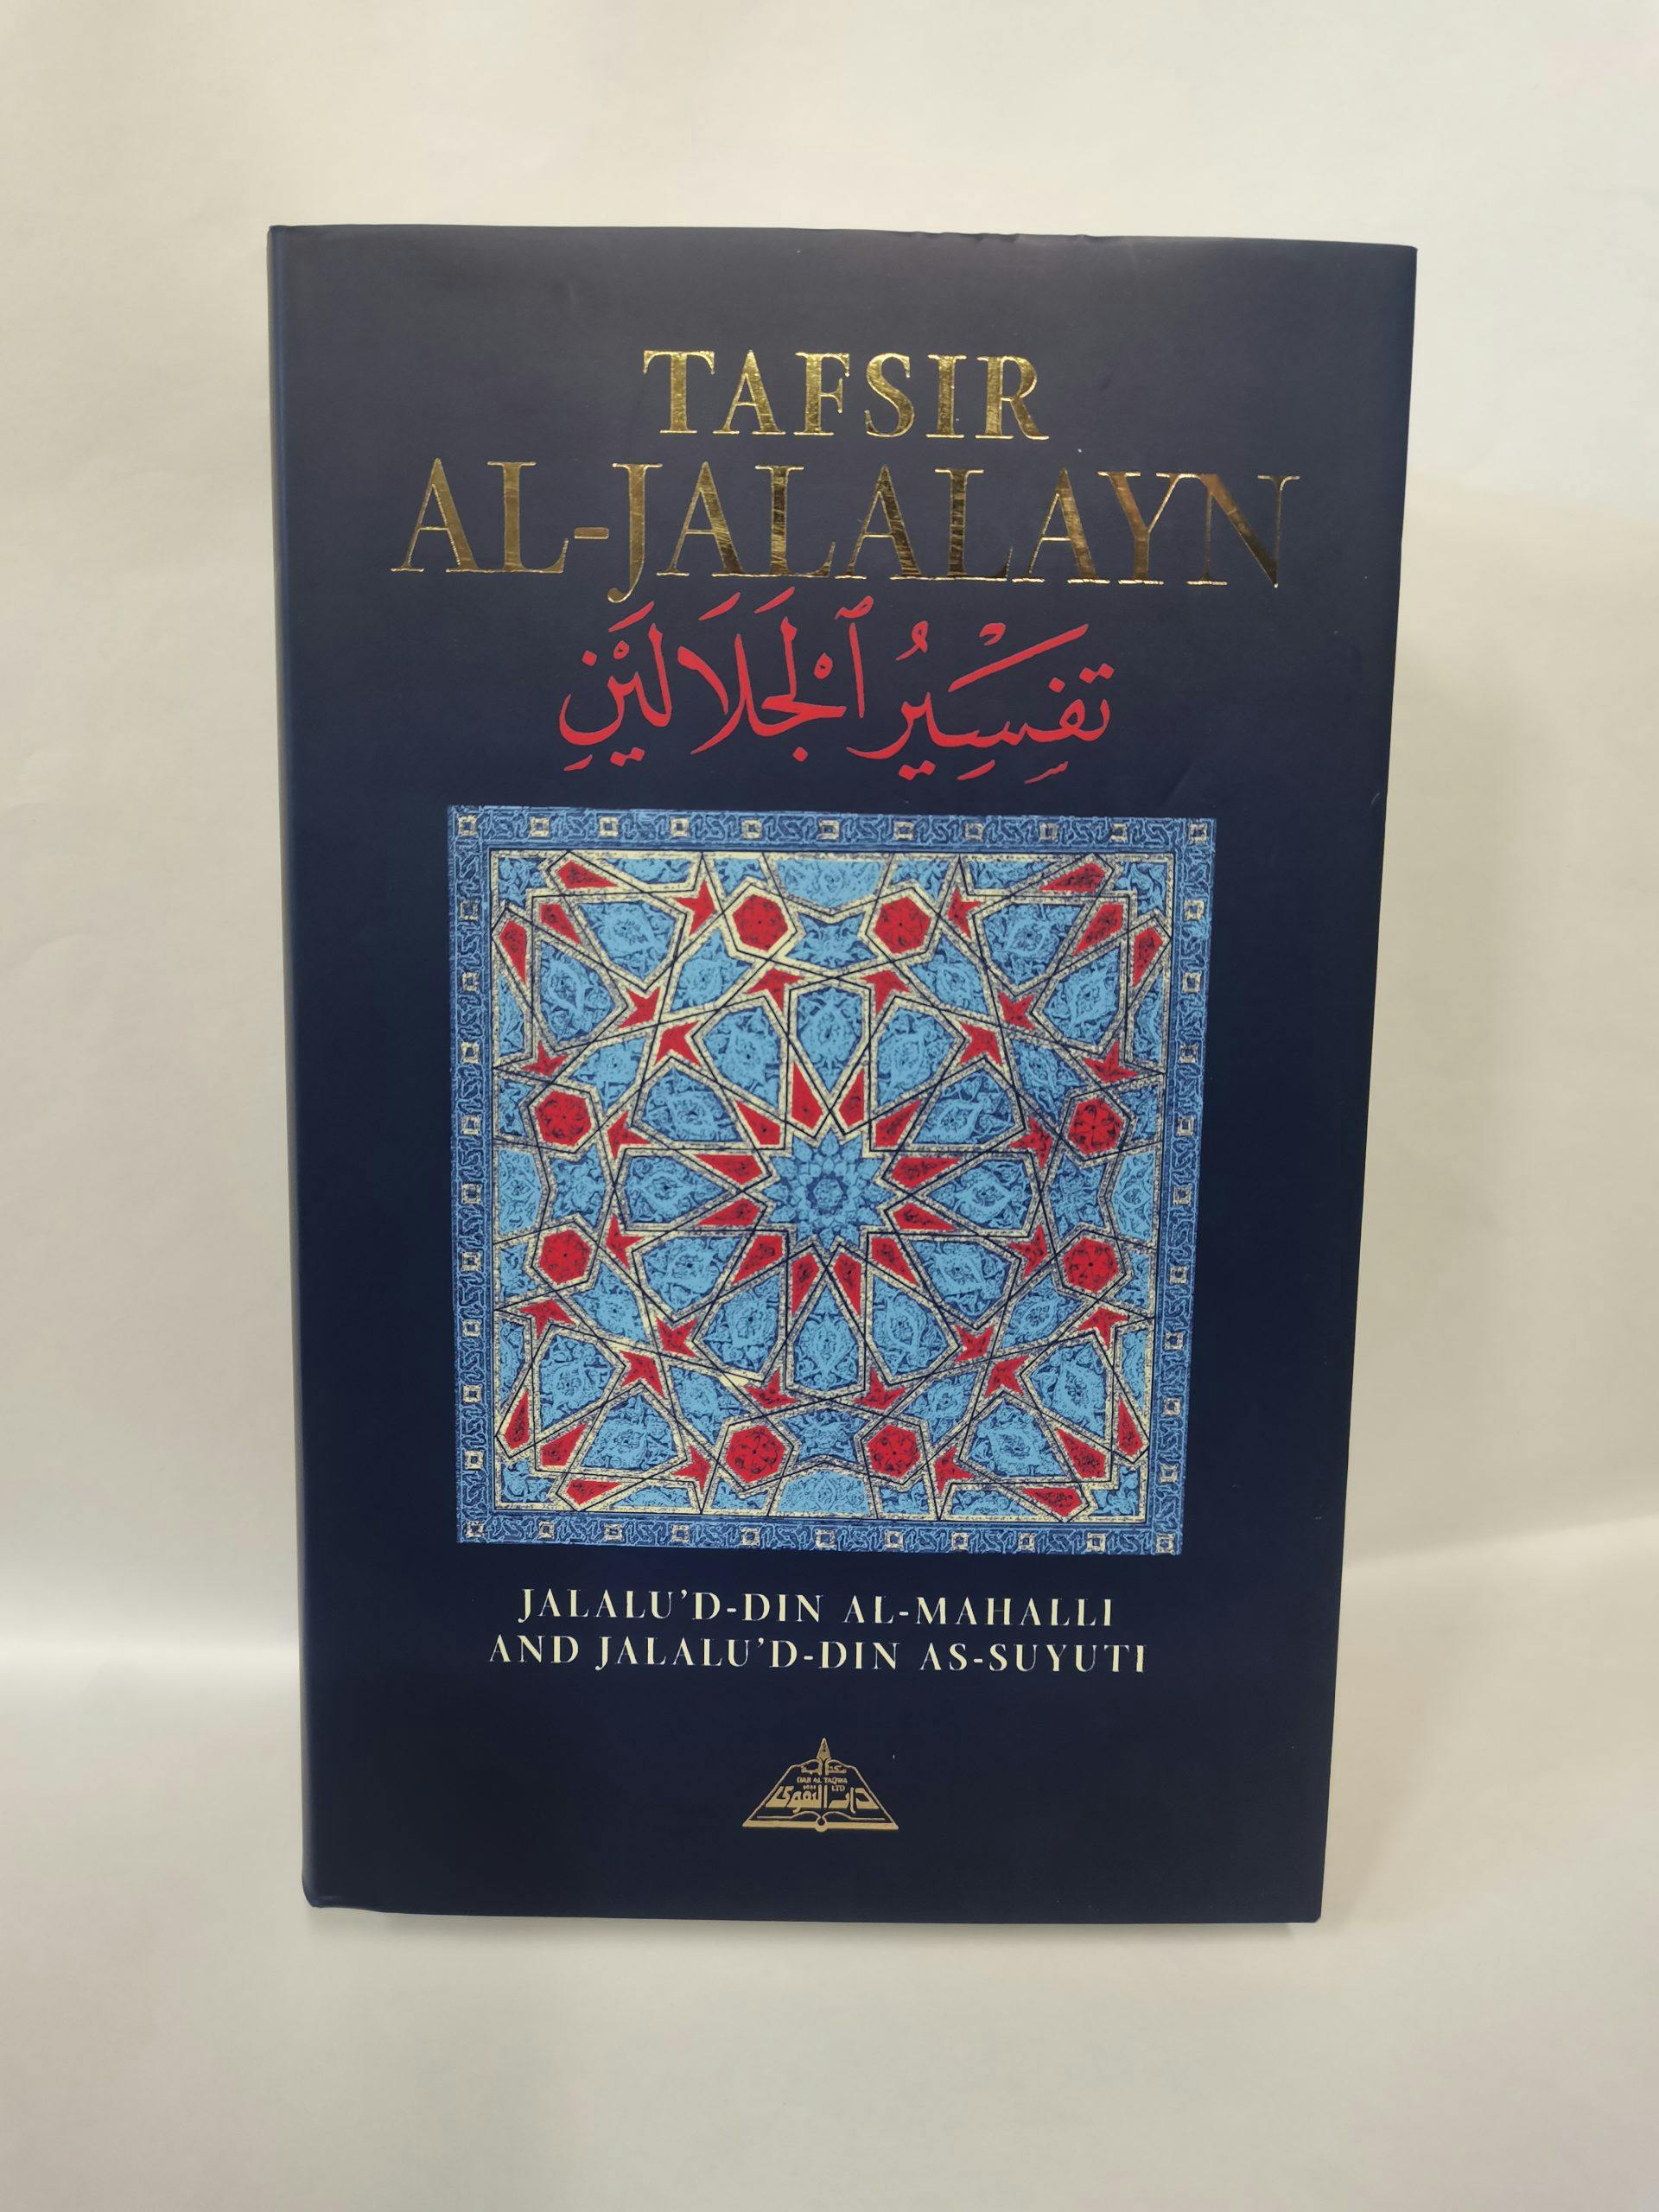 Featured image of Tafsir Al-Jalalayn